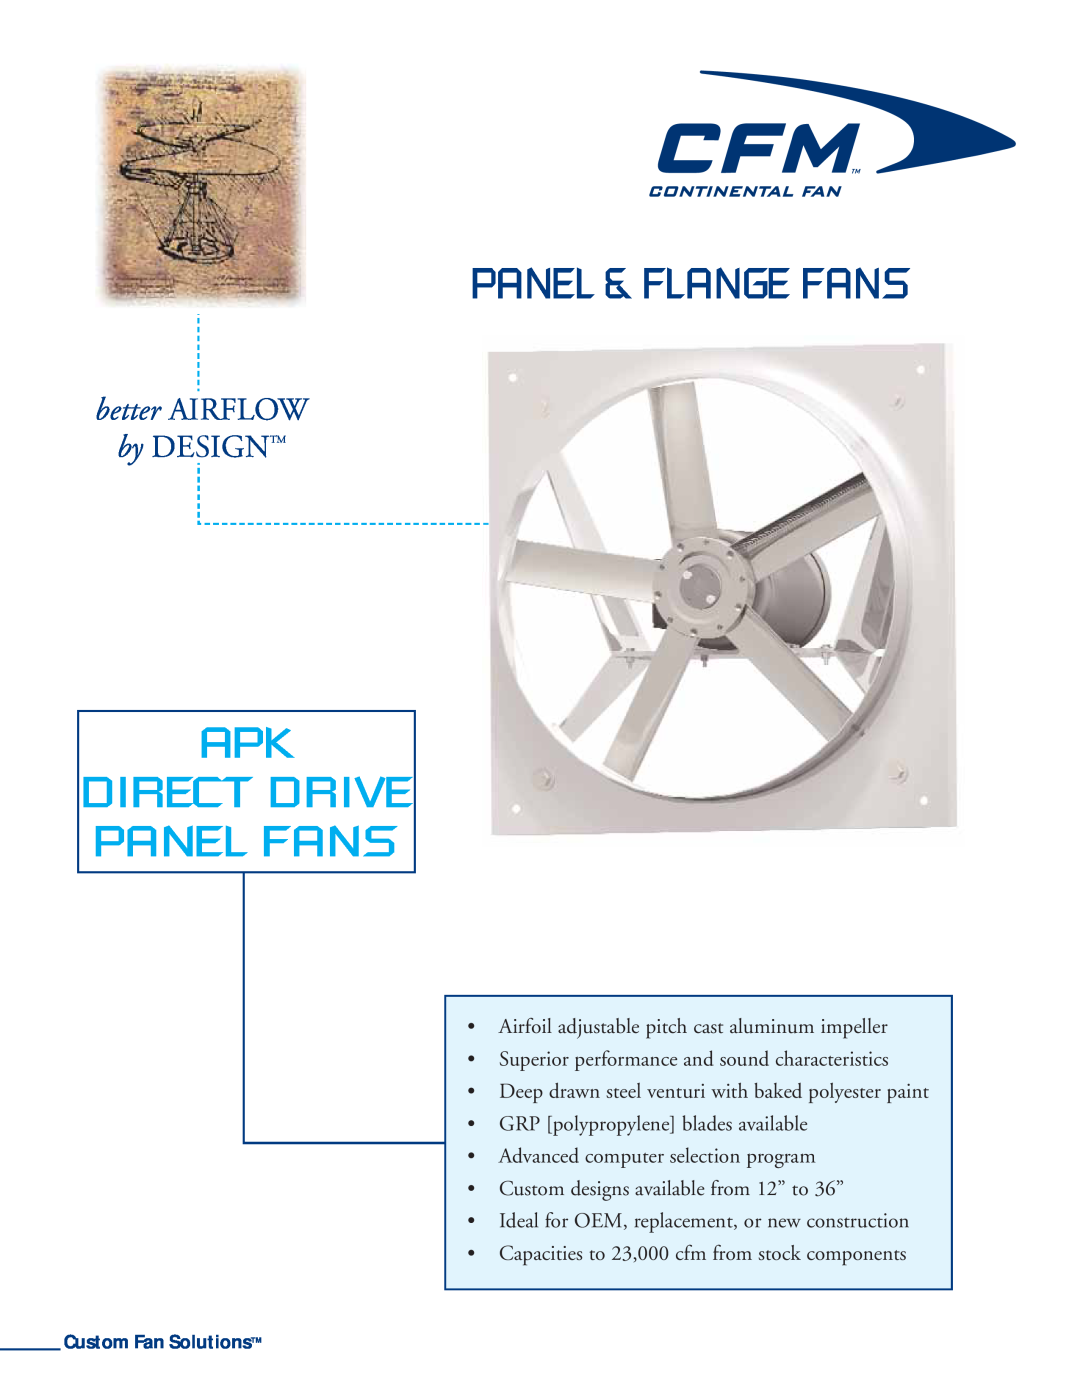 CFM APK-18, APK-30, APK-27, APK-36 manual Panel & Flange Fans, Apk Direct Drive Panel Fans, better AIRFLOW, by DESIGNTM 